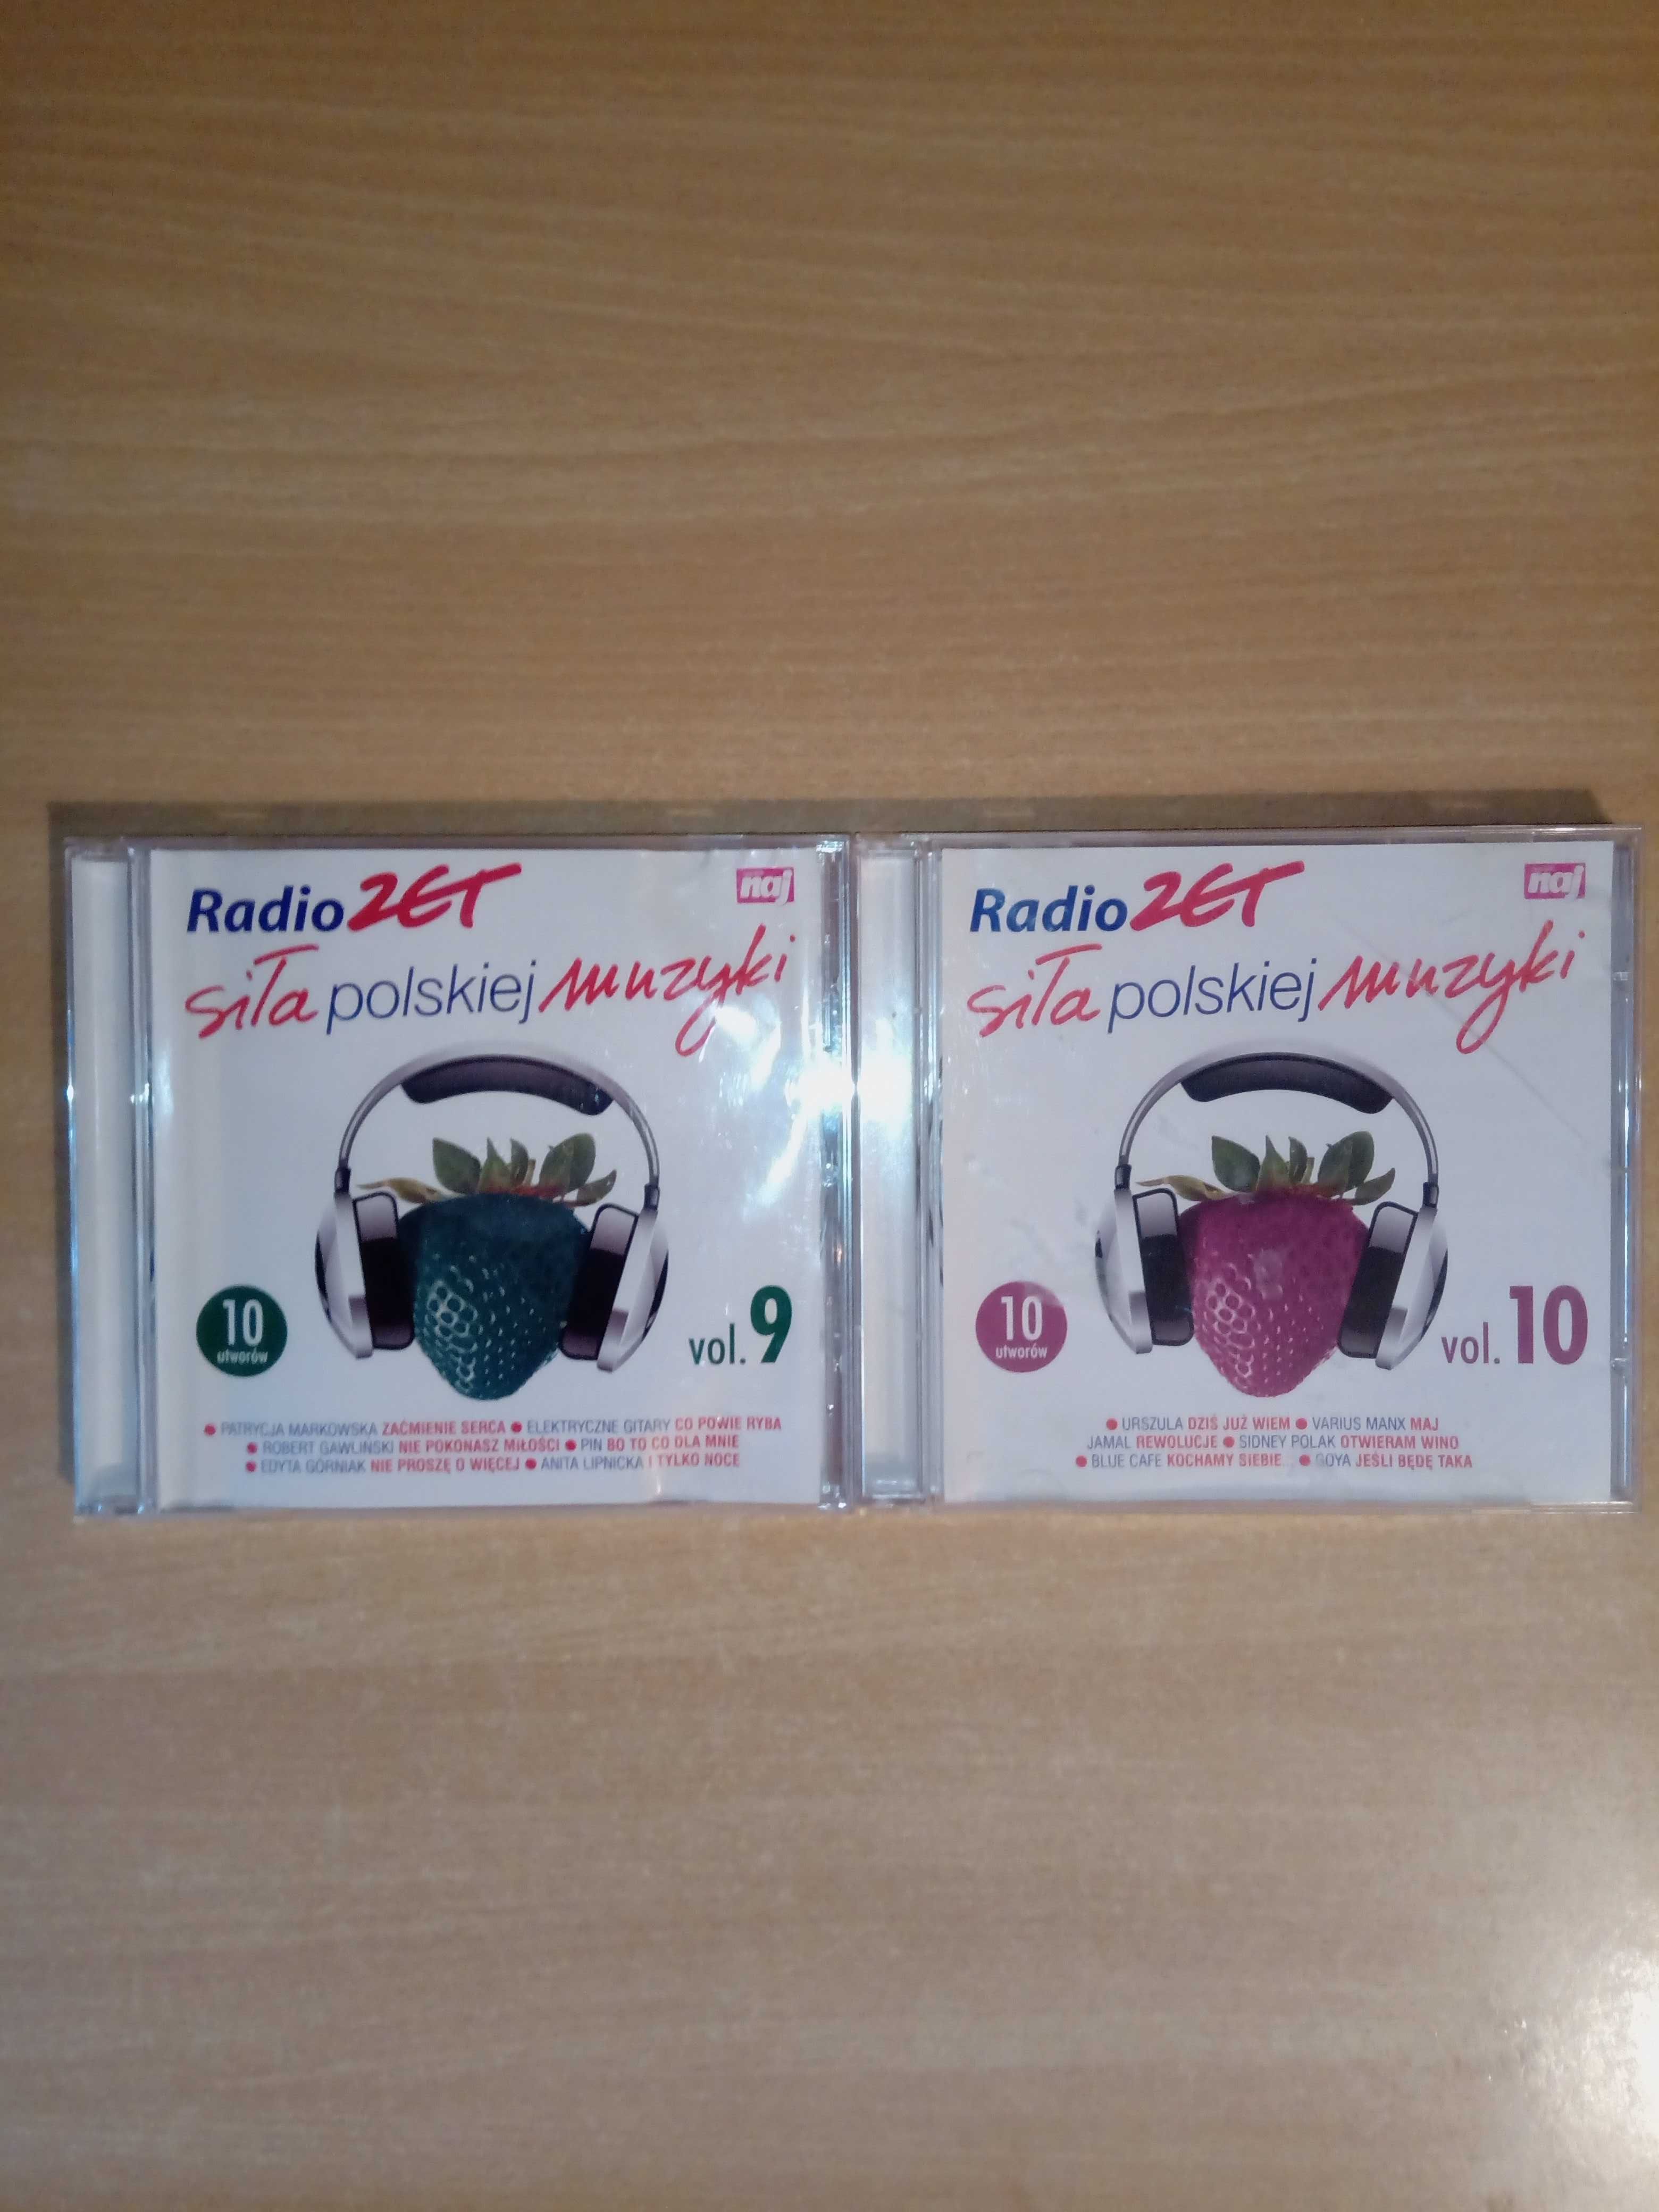 Radio ZET siła polskiej muzyki 2008 vol. 1-10 [komplet 10 płyt CD]